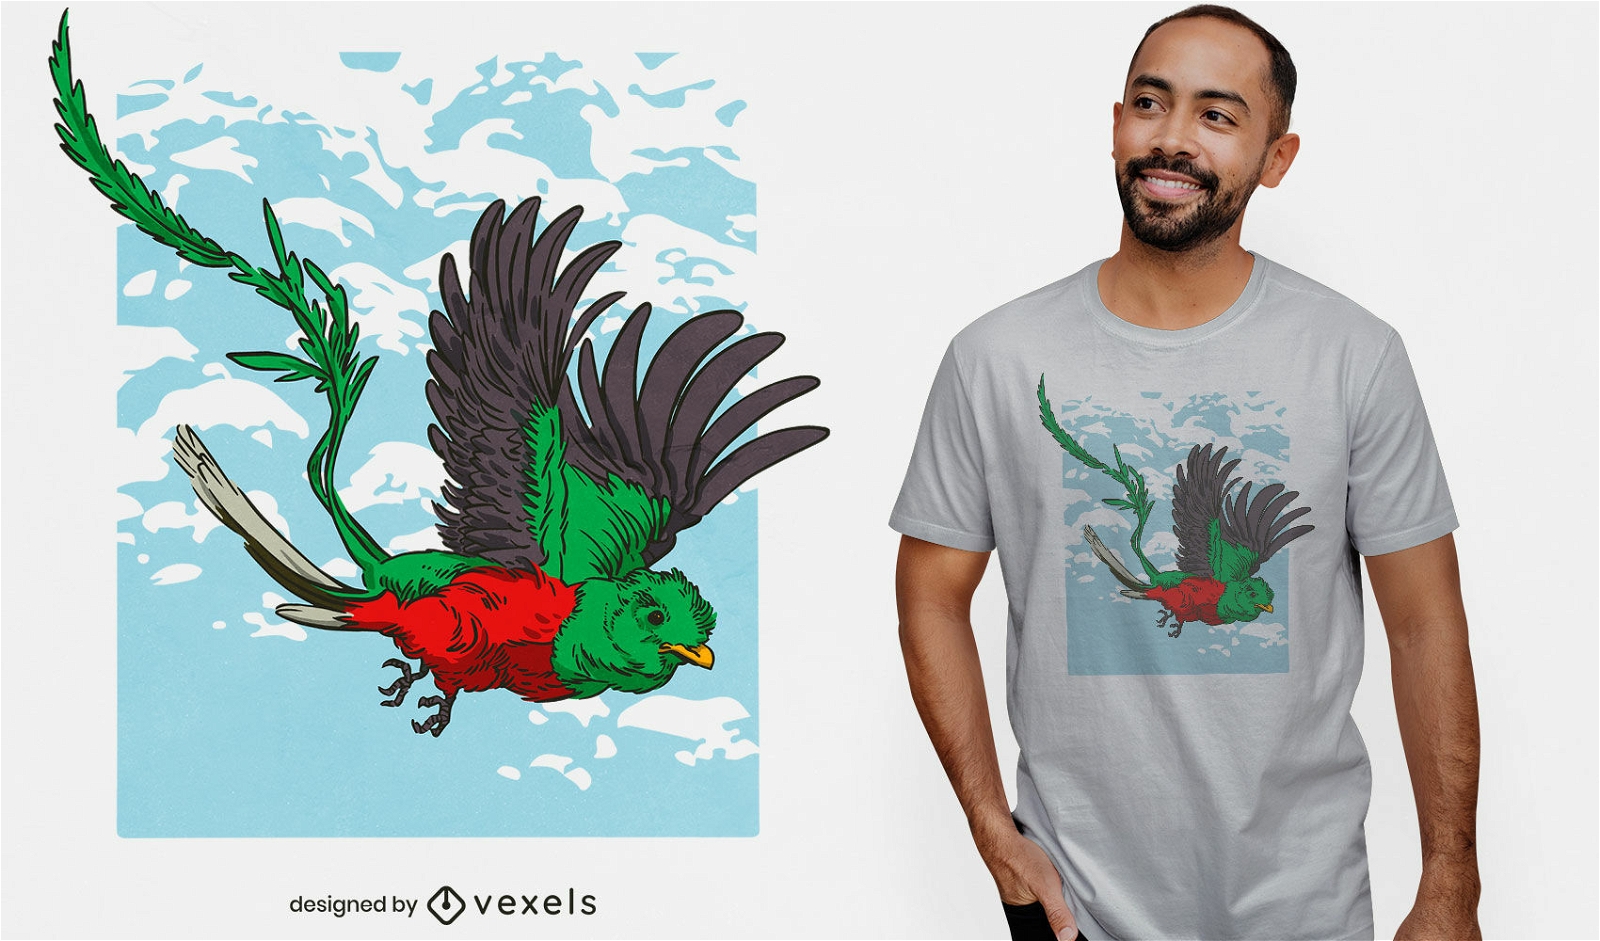 Quetzal cultural bird t-shirt design